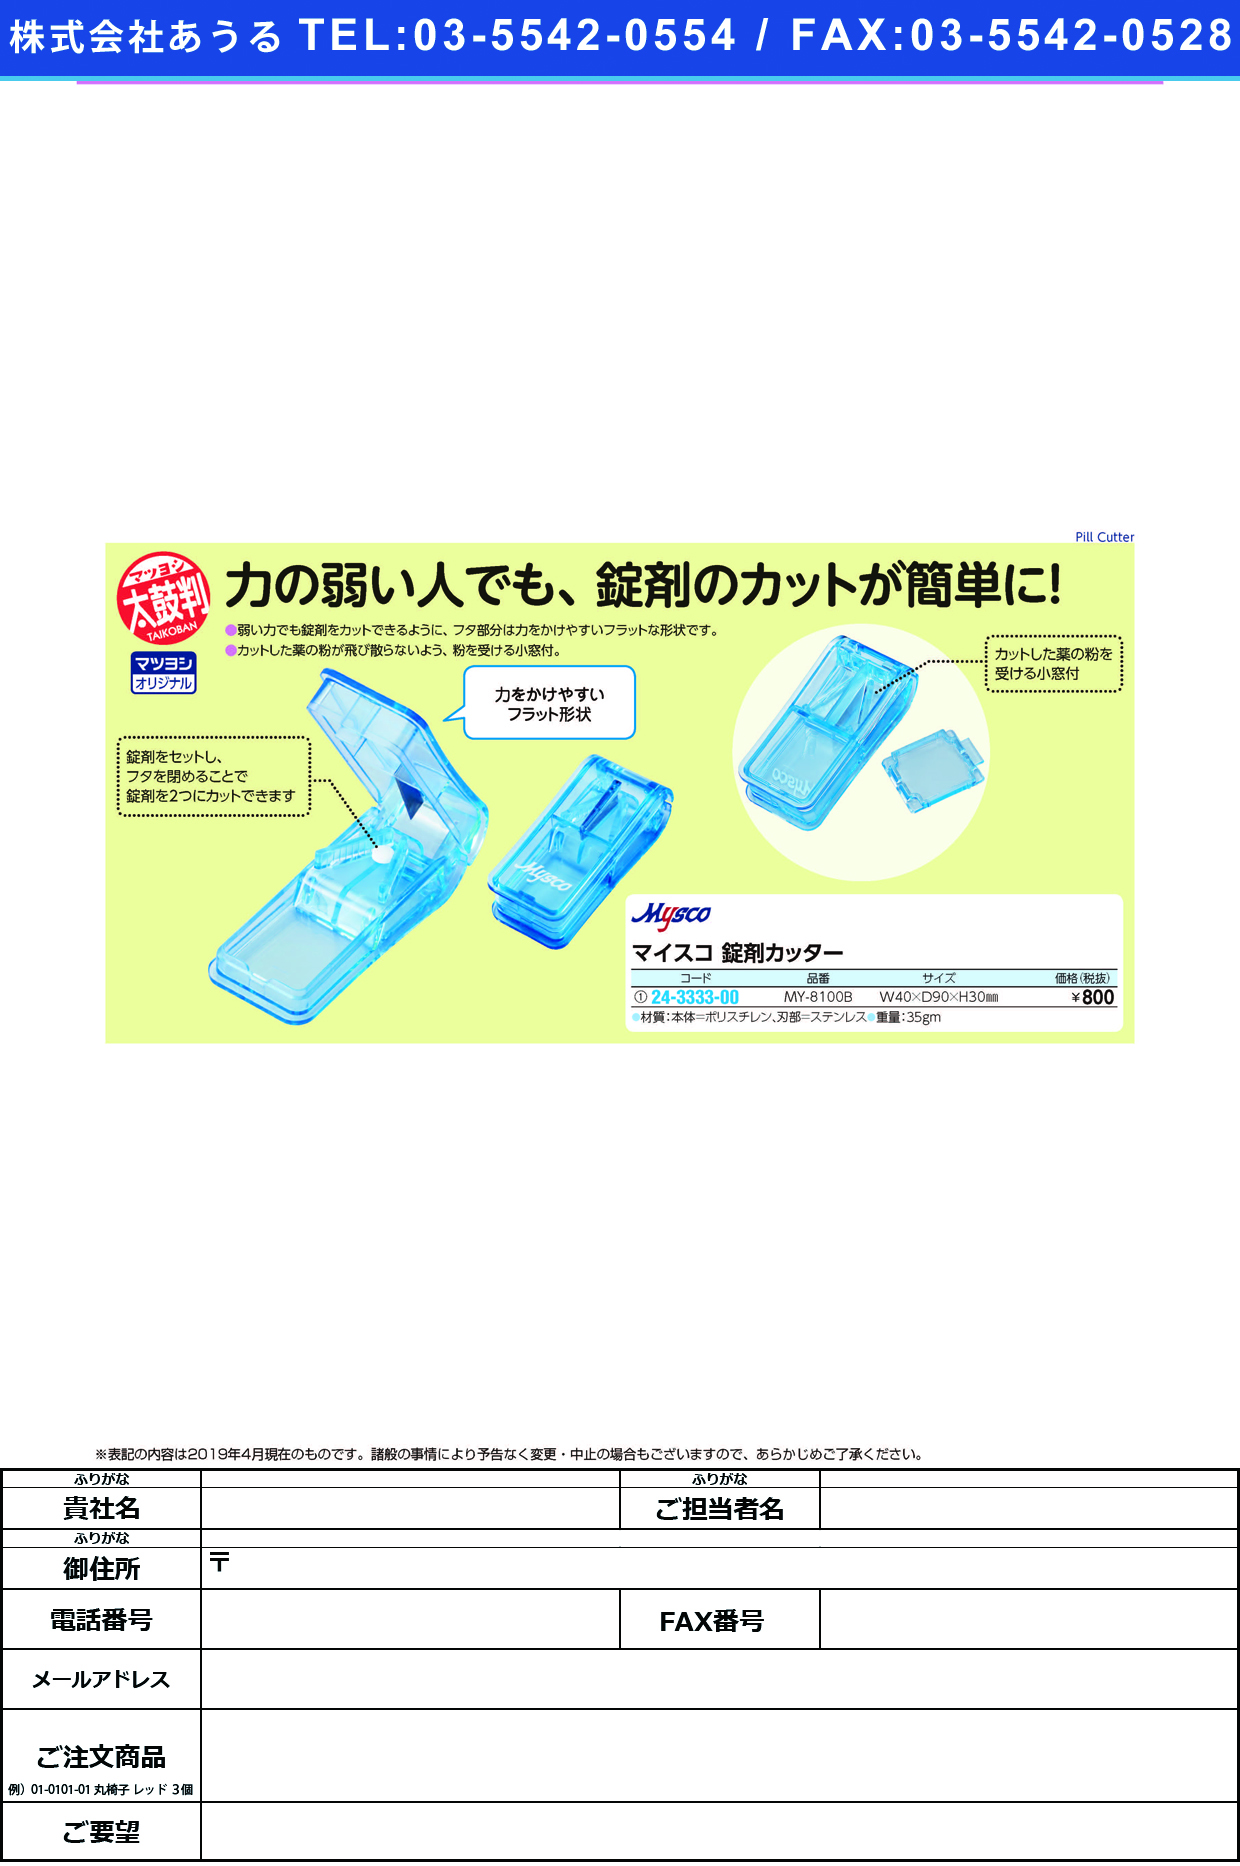 (24-3333-00)マイスコ錠剤カッター MY-8100B(ﾌﾞﾙｰ) ﾏｲｽｺｼﾞｮｳｻﾞｲｶｯﾀｰ【1個単位】【2019年カタログ商品】